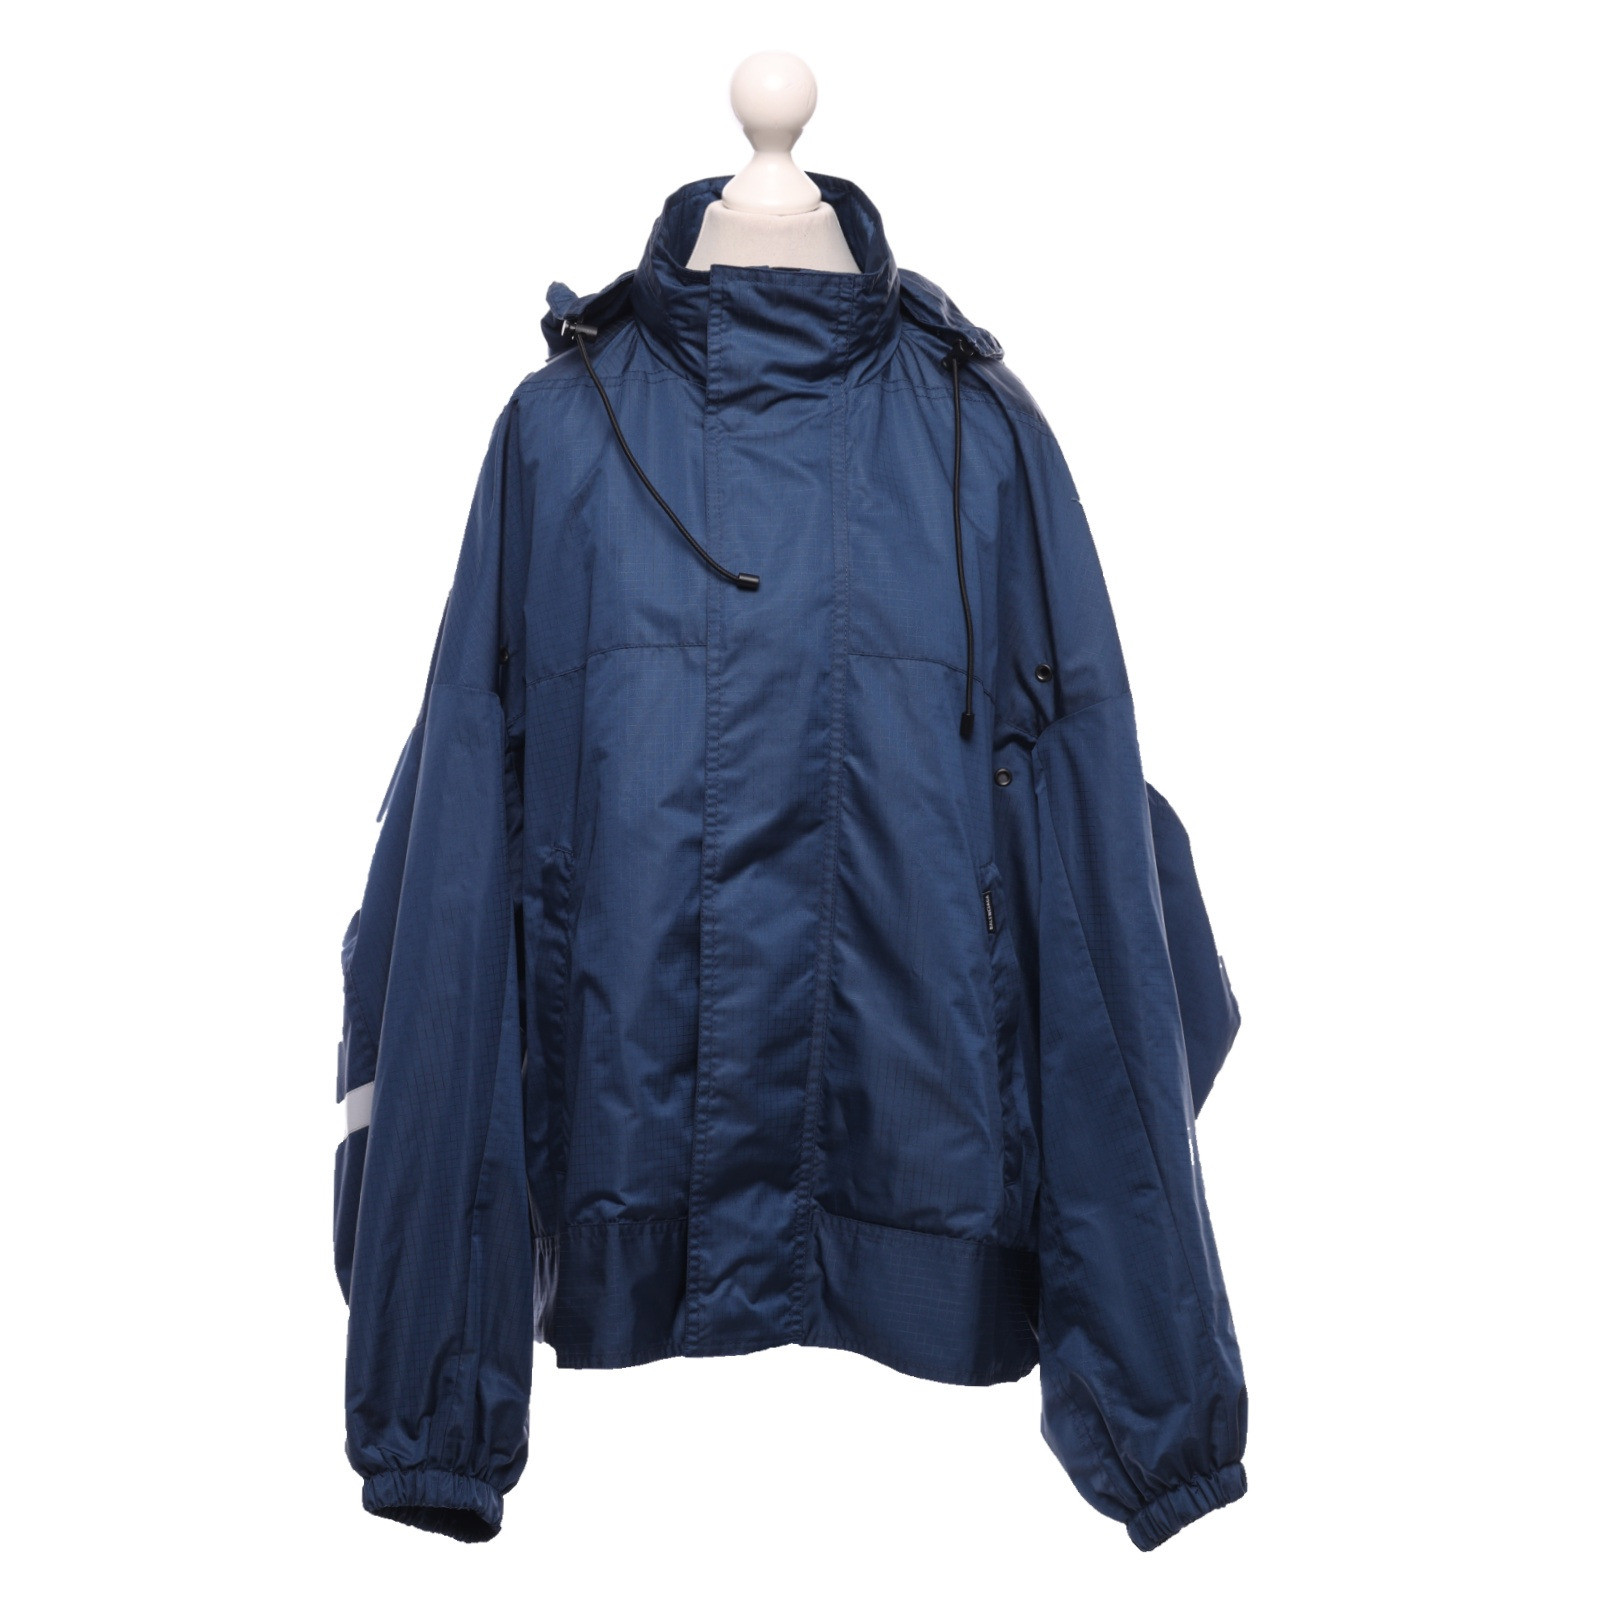 BALENCIAGA Women's Jacke/Mantel in Blau Size: FR 36